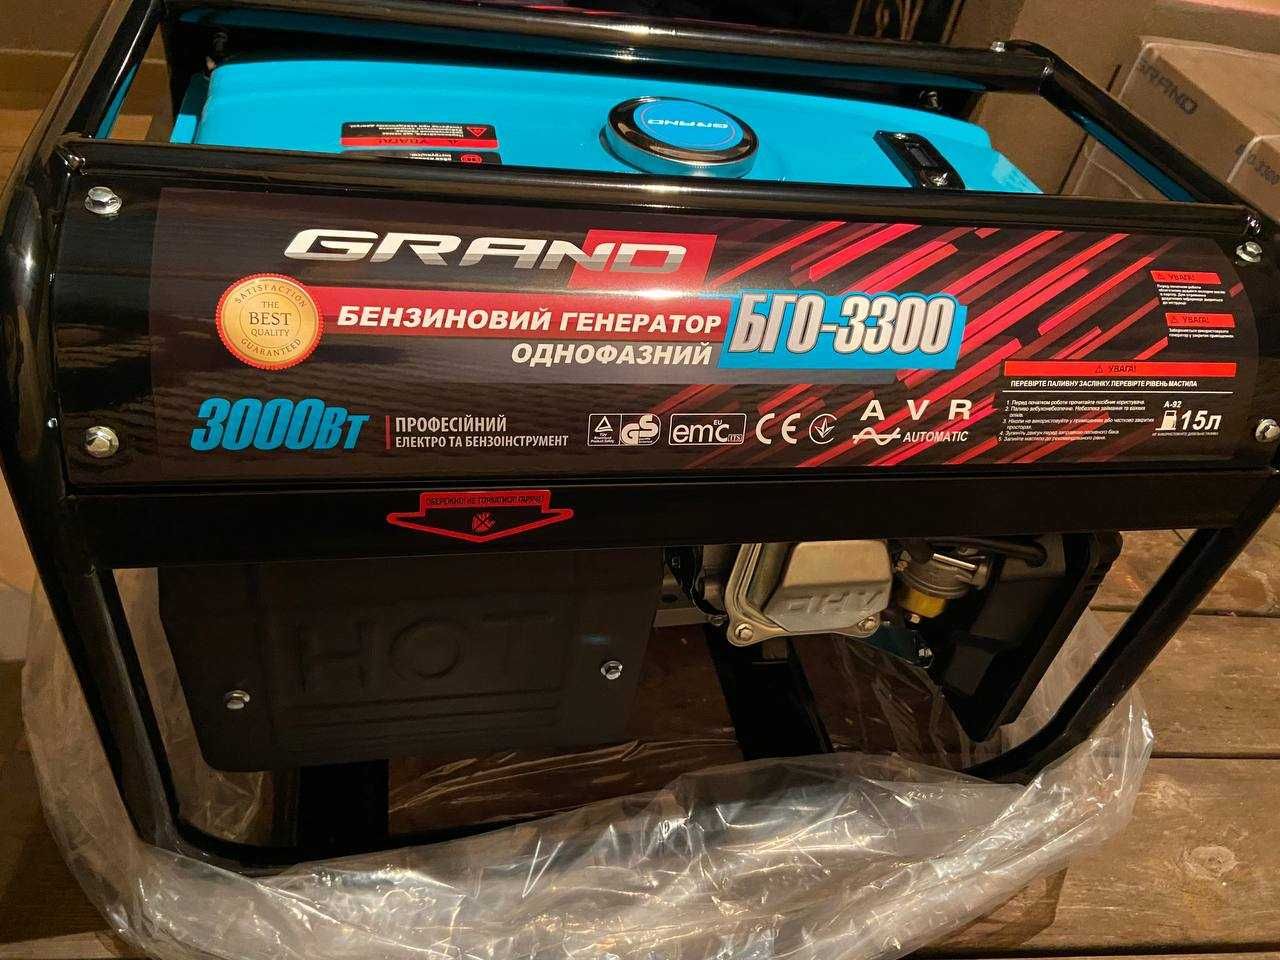 Генератор бензиновий Grand БГО-3300 3 кВт